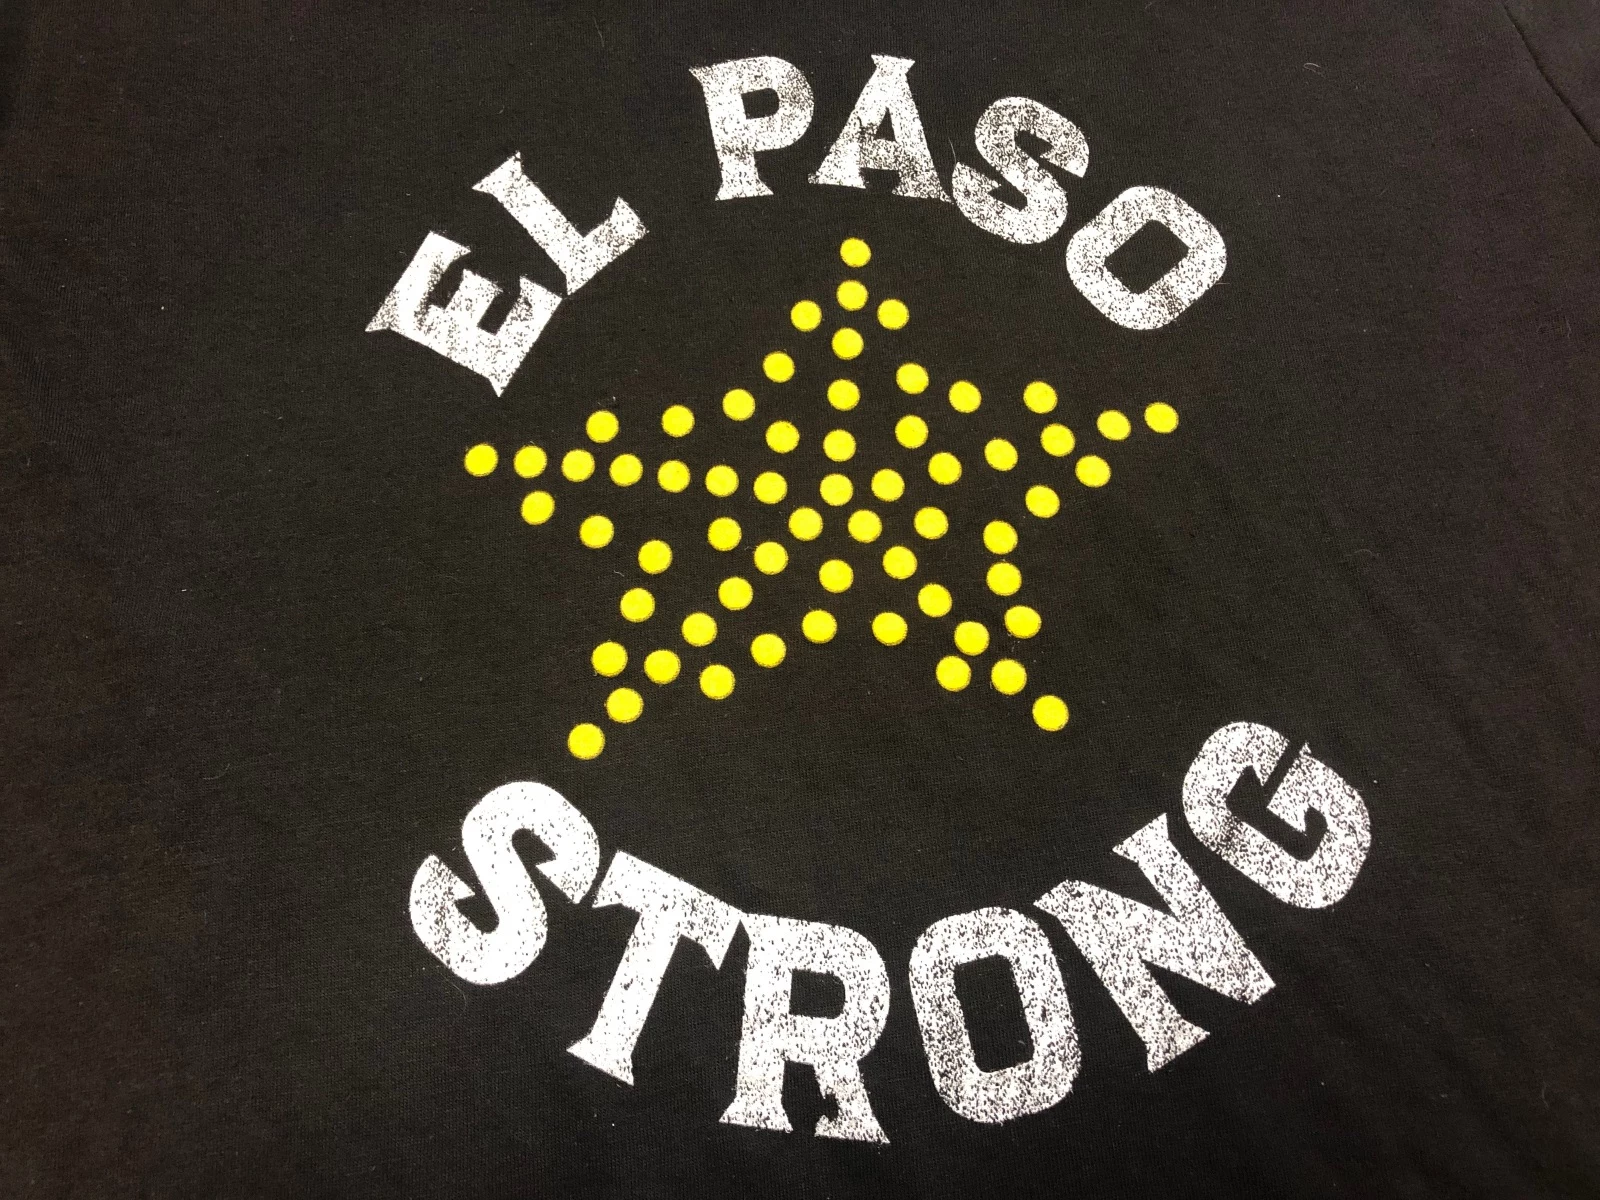 El Paso Strong T Shirt El Paso Fuerte T-Shirt